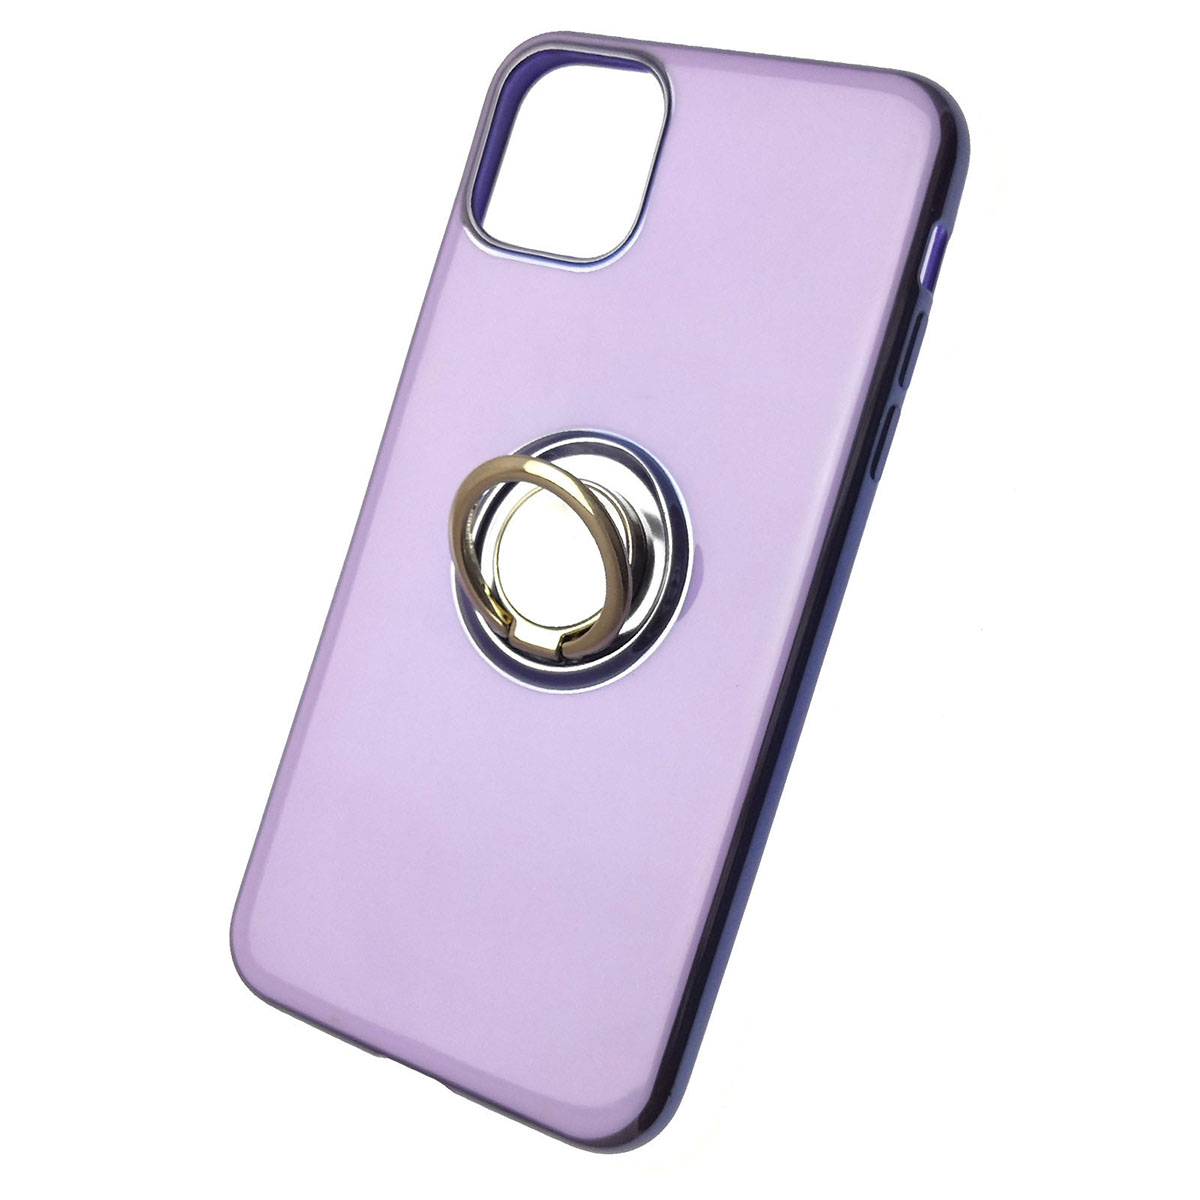 Чехол накладка для APPLE iPhone 11 Pro MAX, силикон, глянец, с лого, с кольцом, цвет светло фиолетовый.